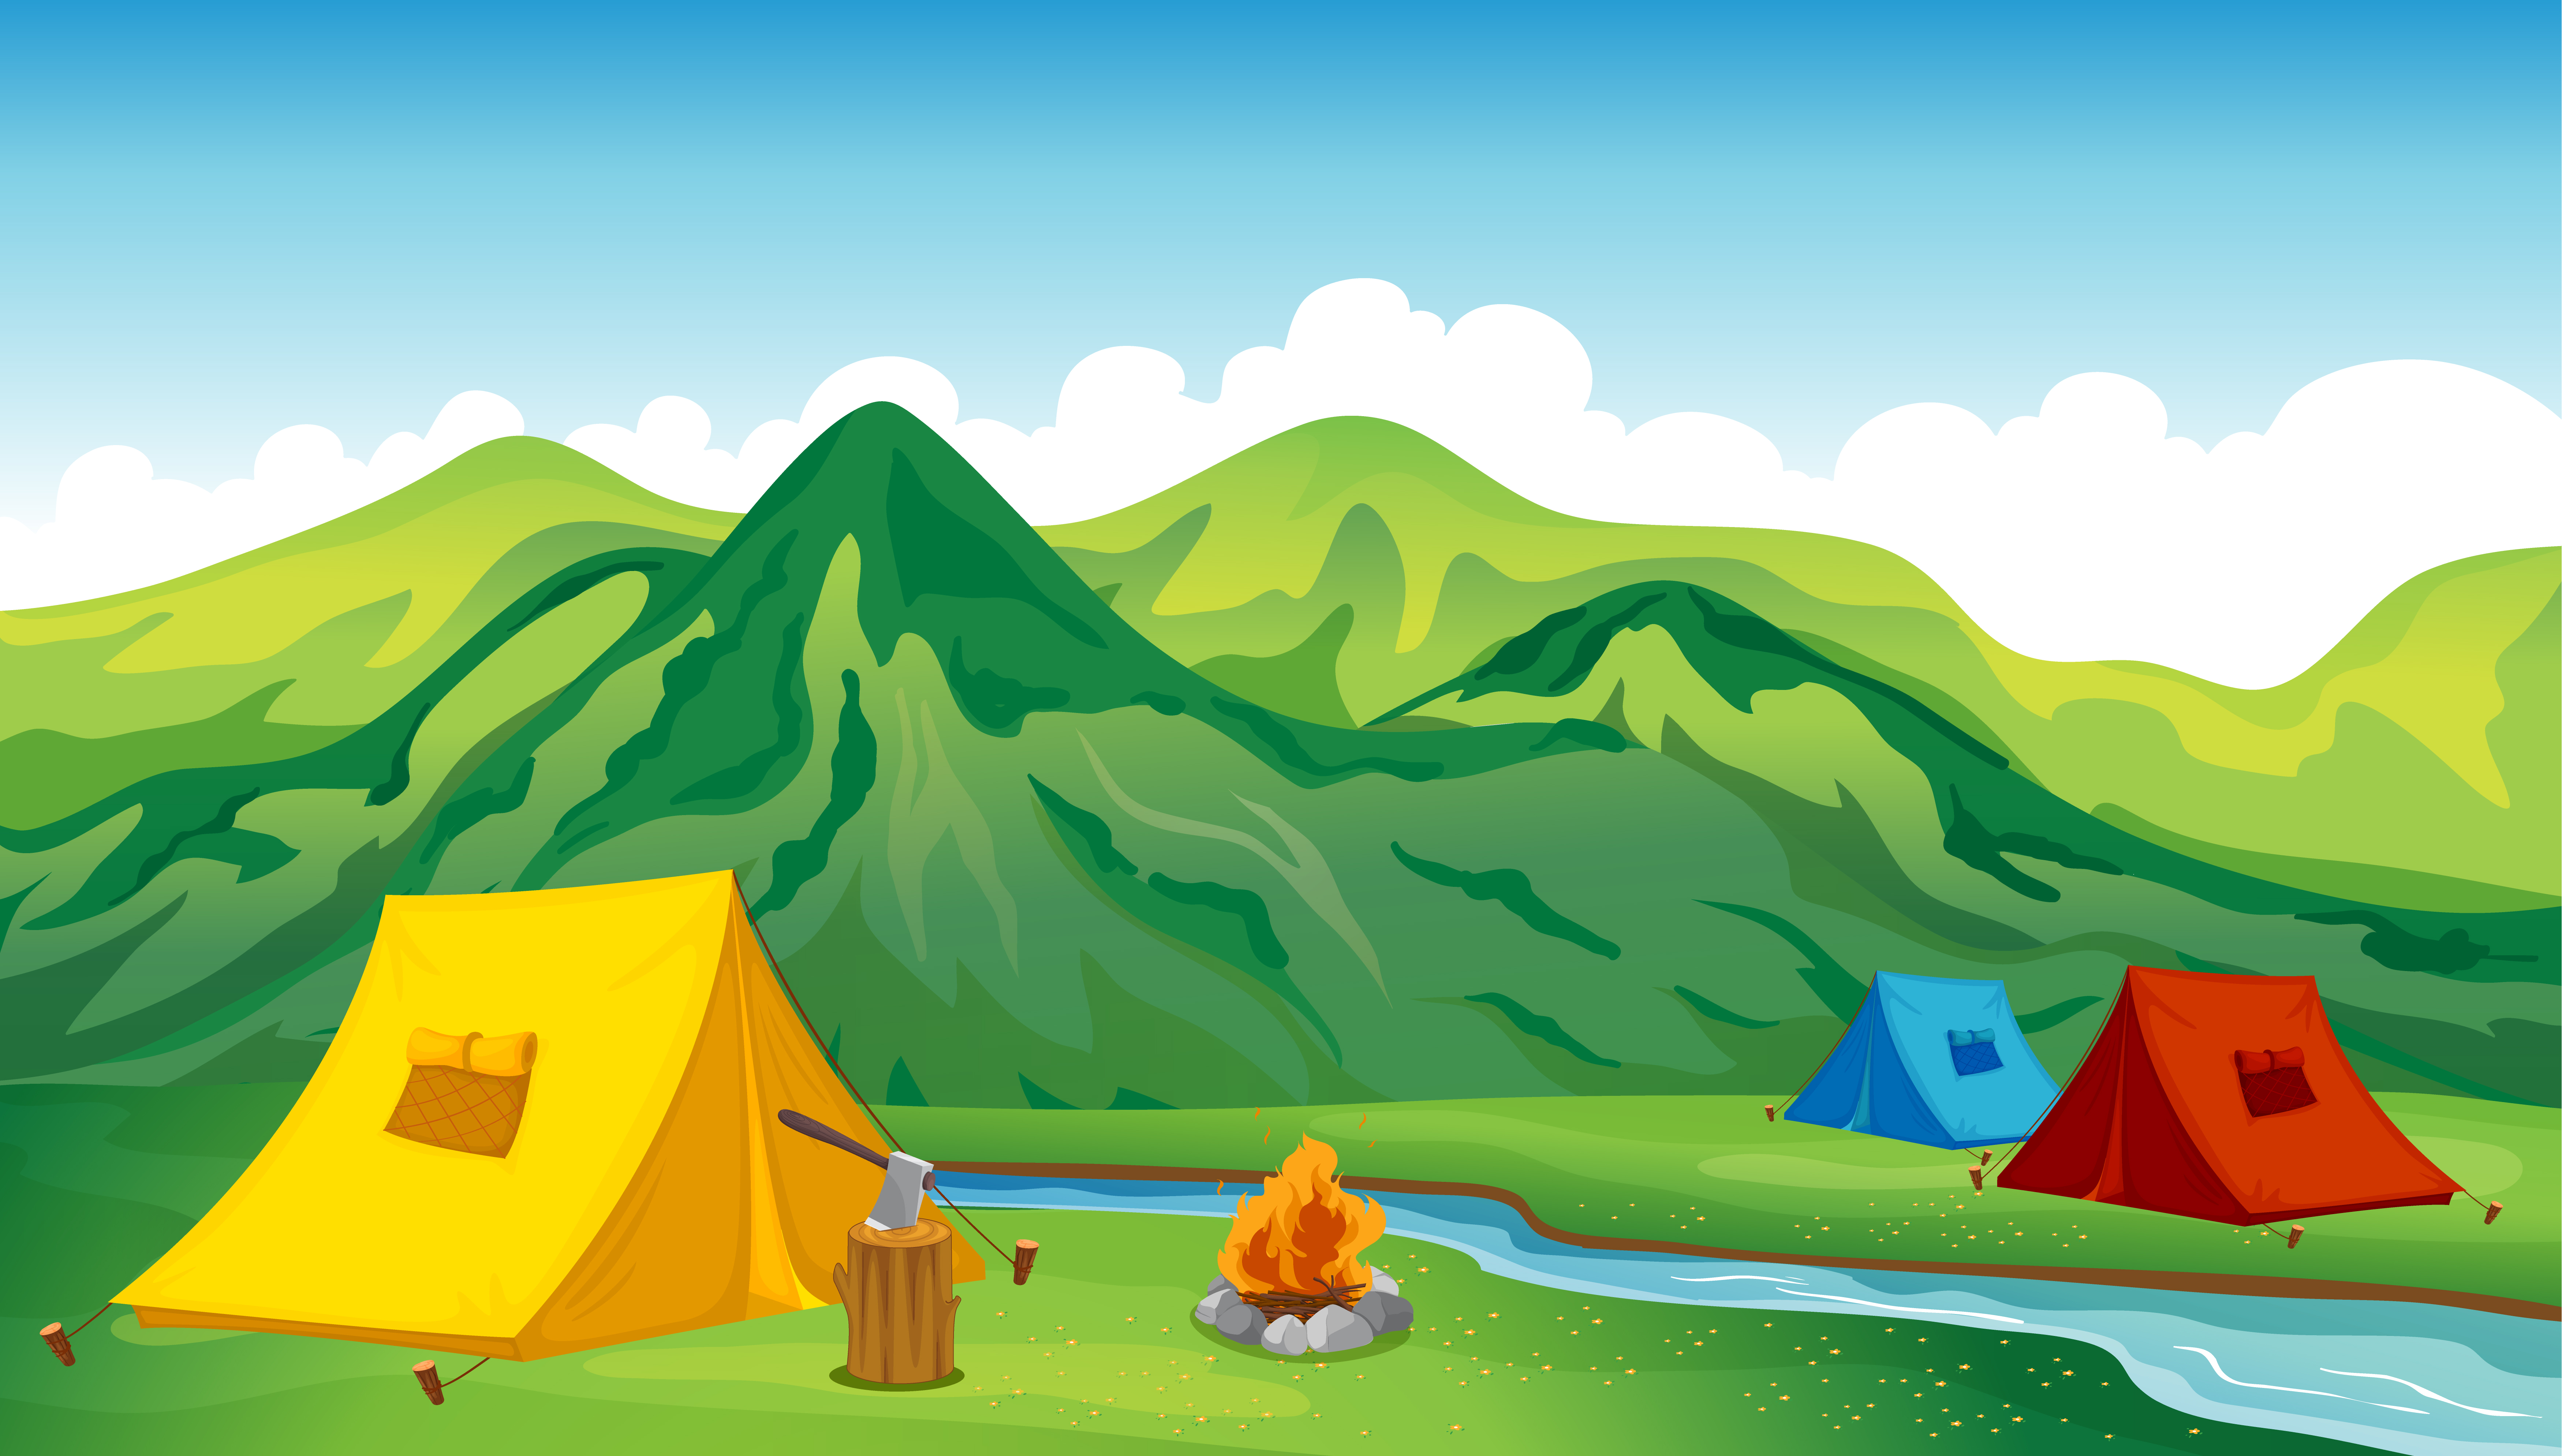 Camping tents - Download Free Vectors, Clipart Graphics & Vector Art